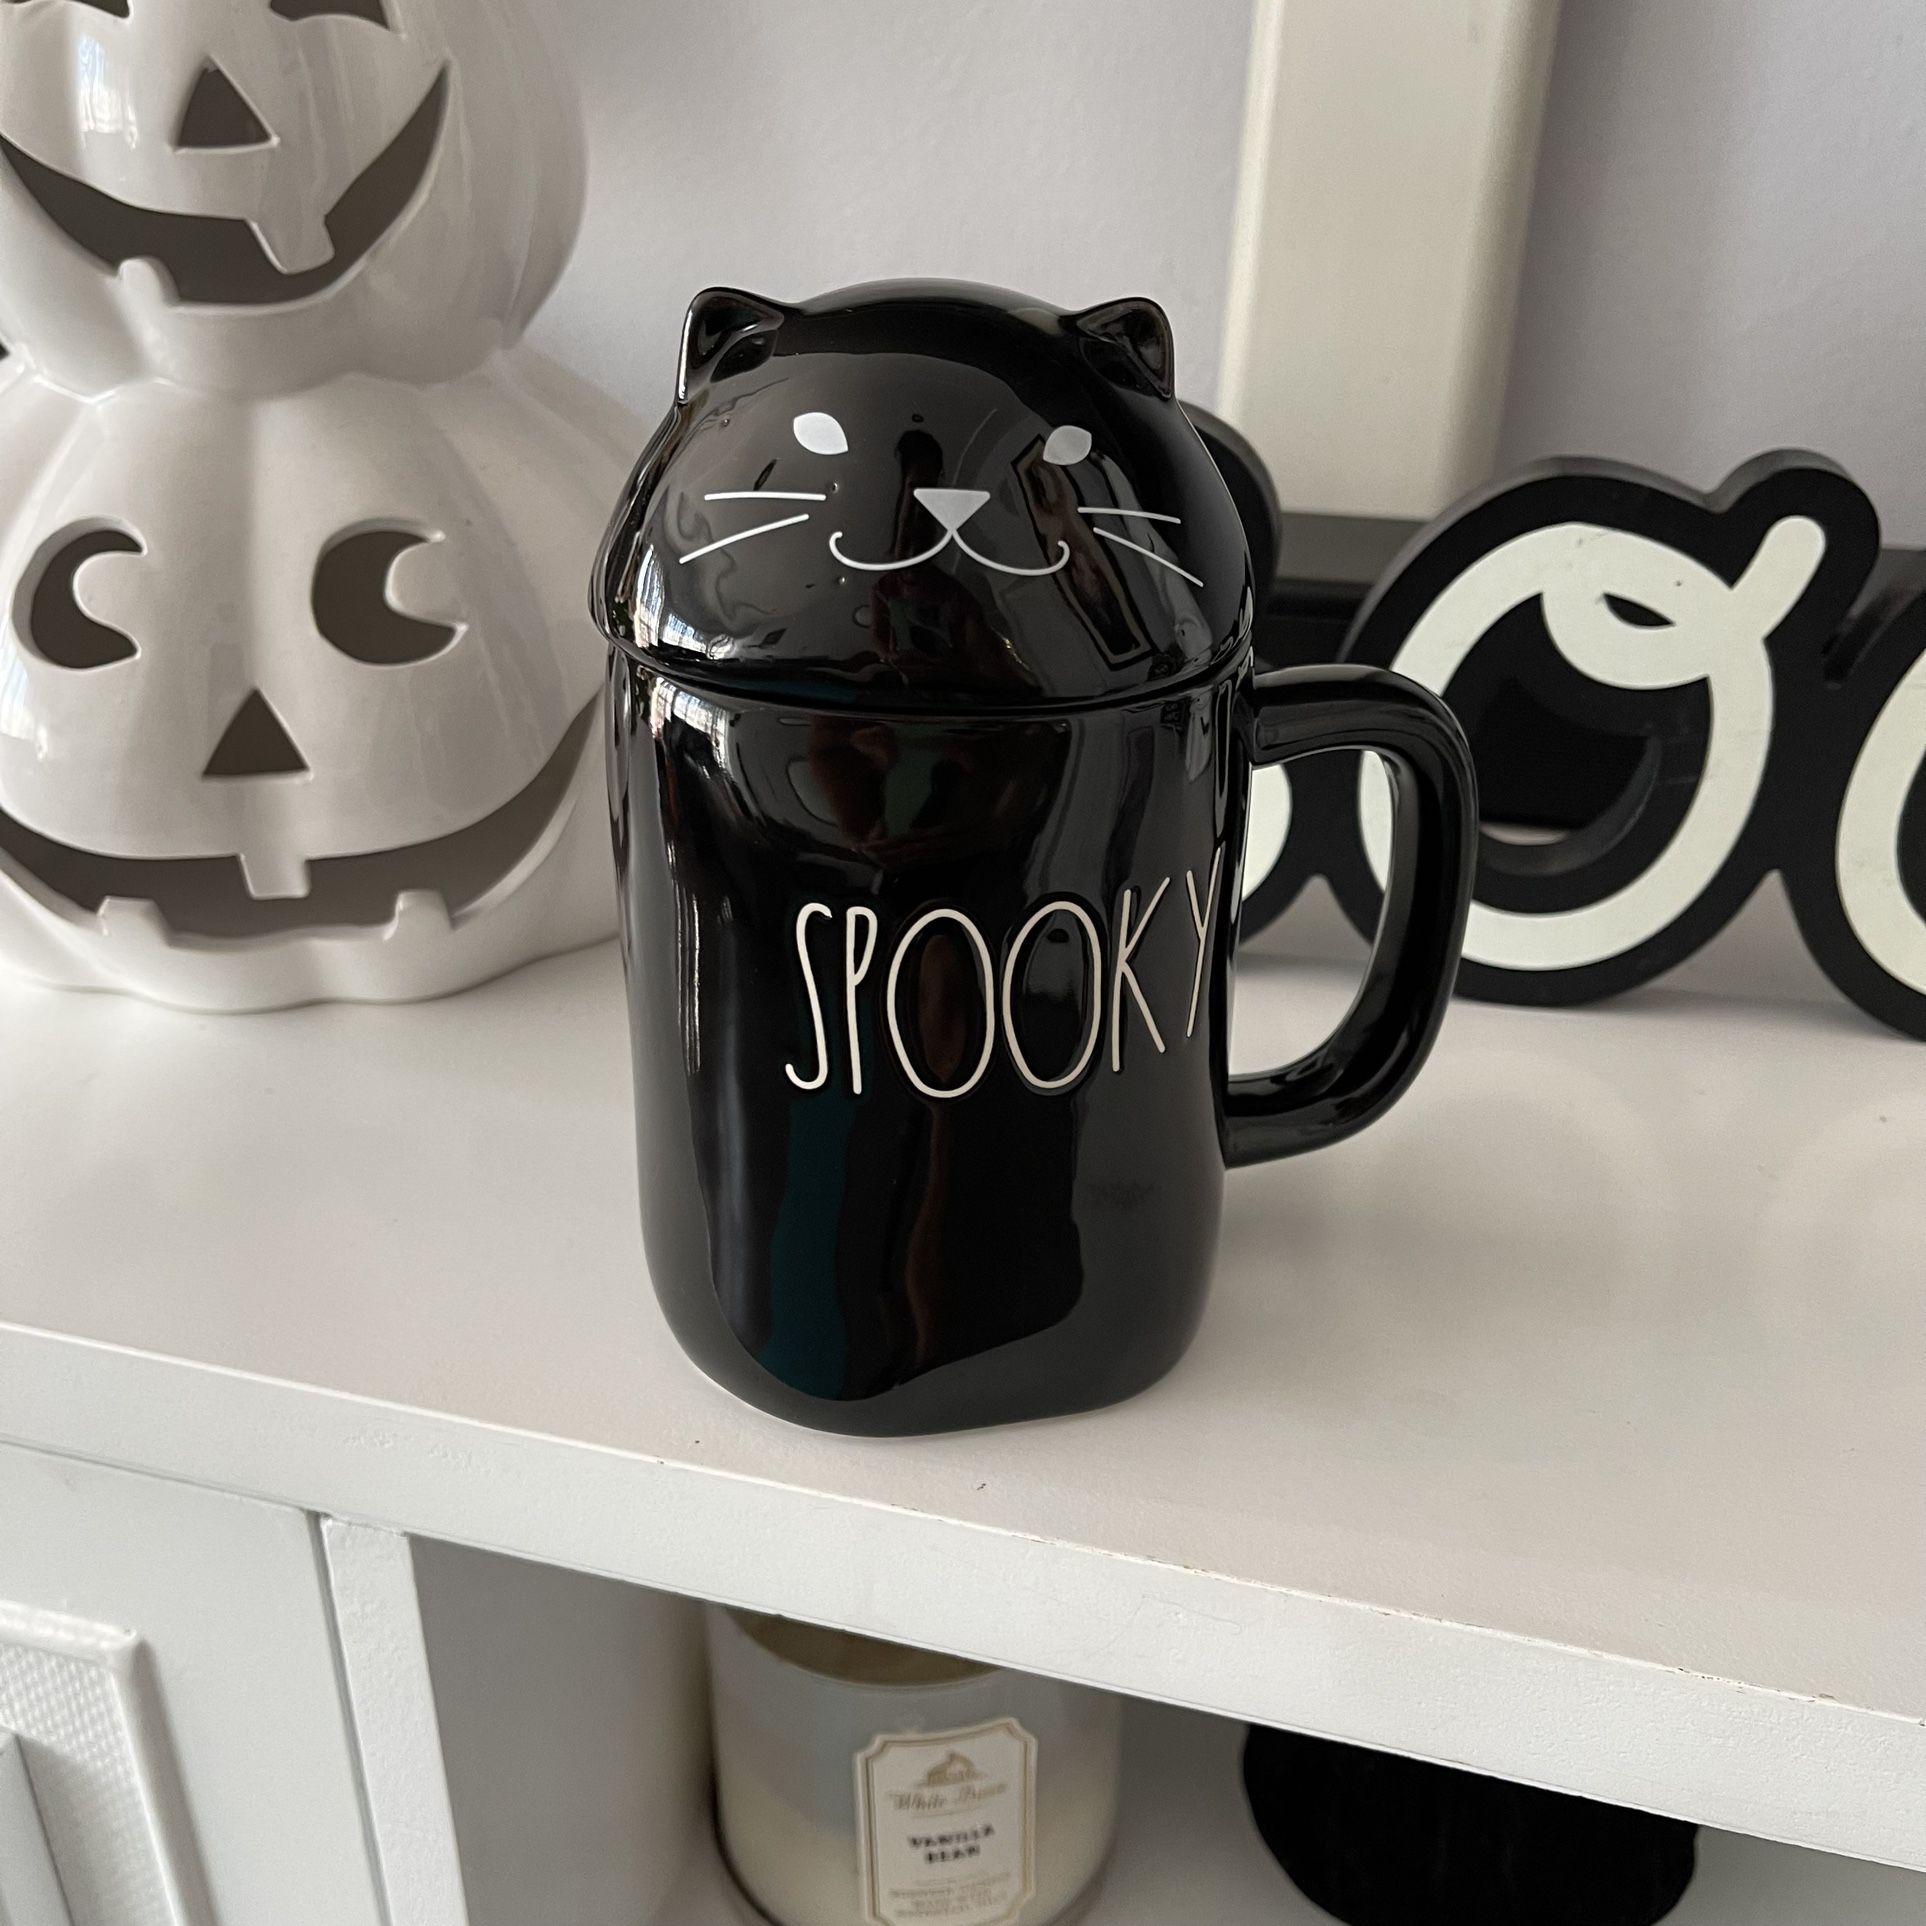 Spooky Rae Dunn mug 